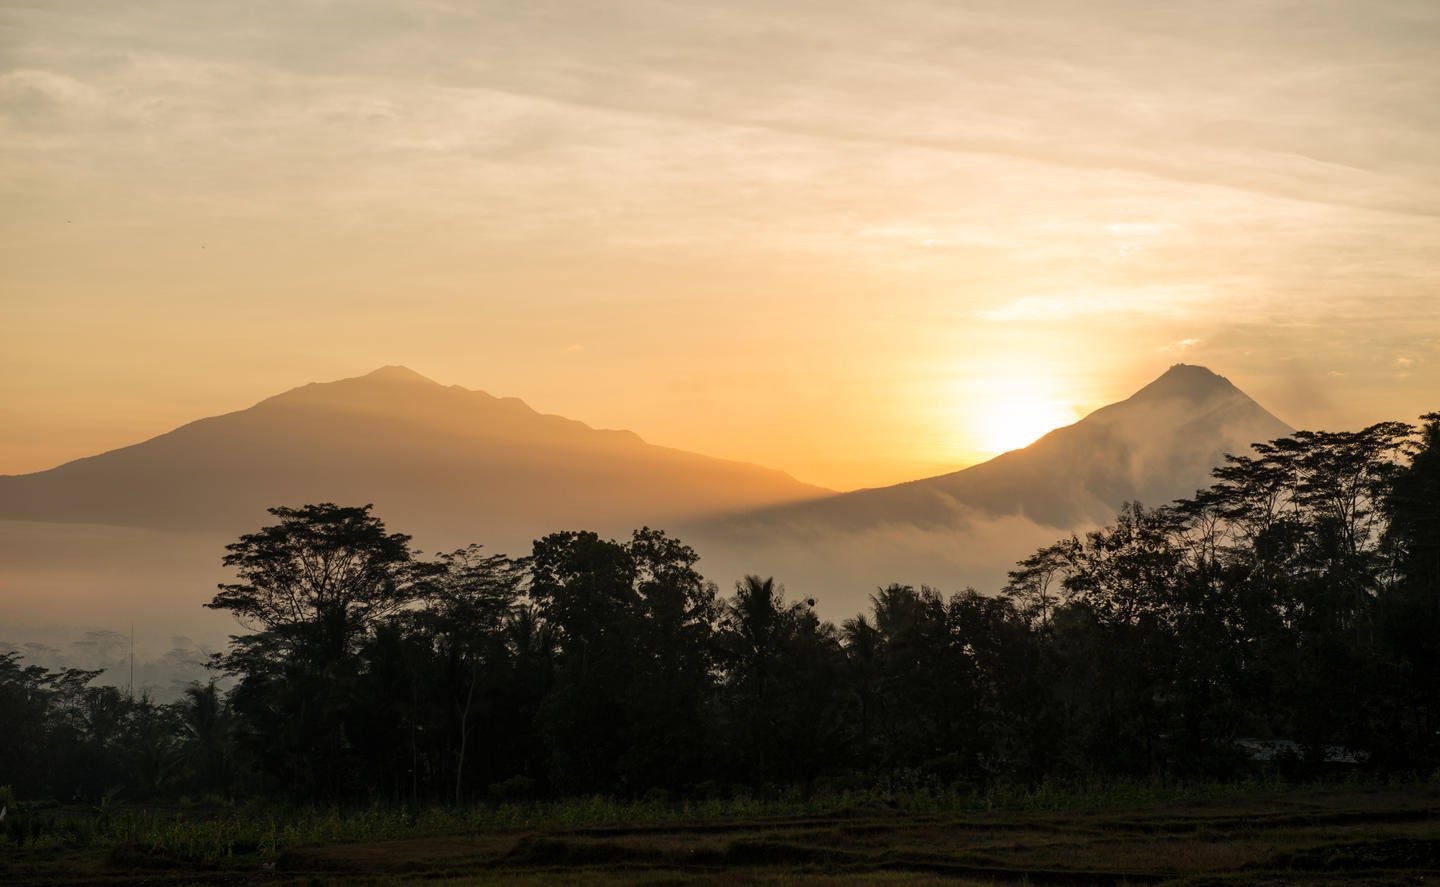 Amanjiwo, Indonesia - Sunrise